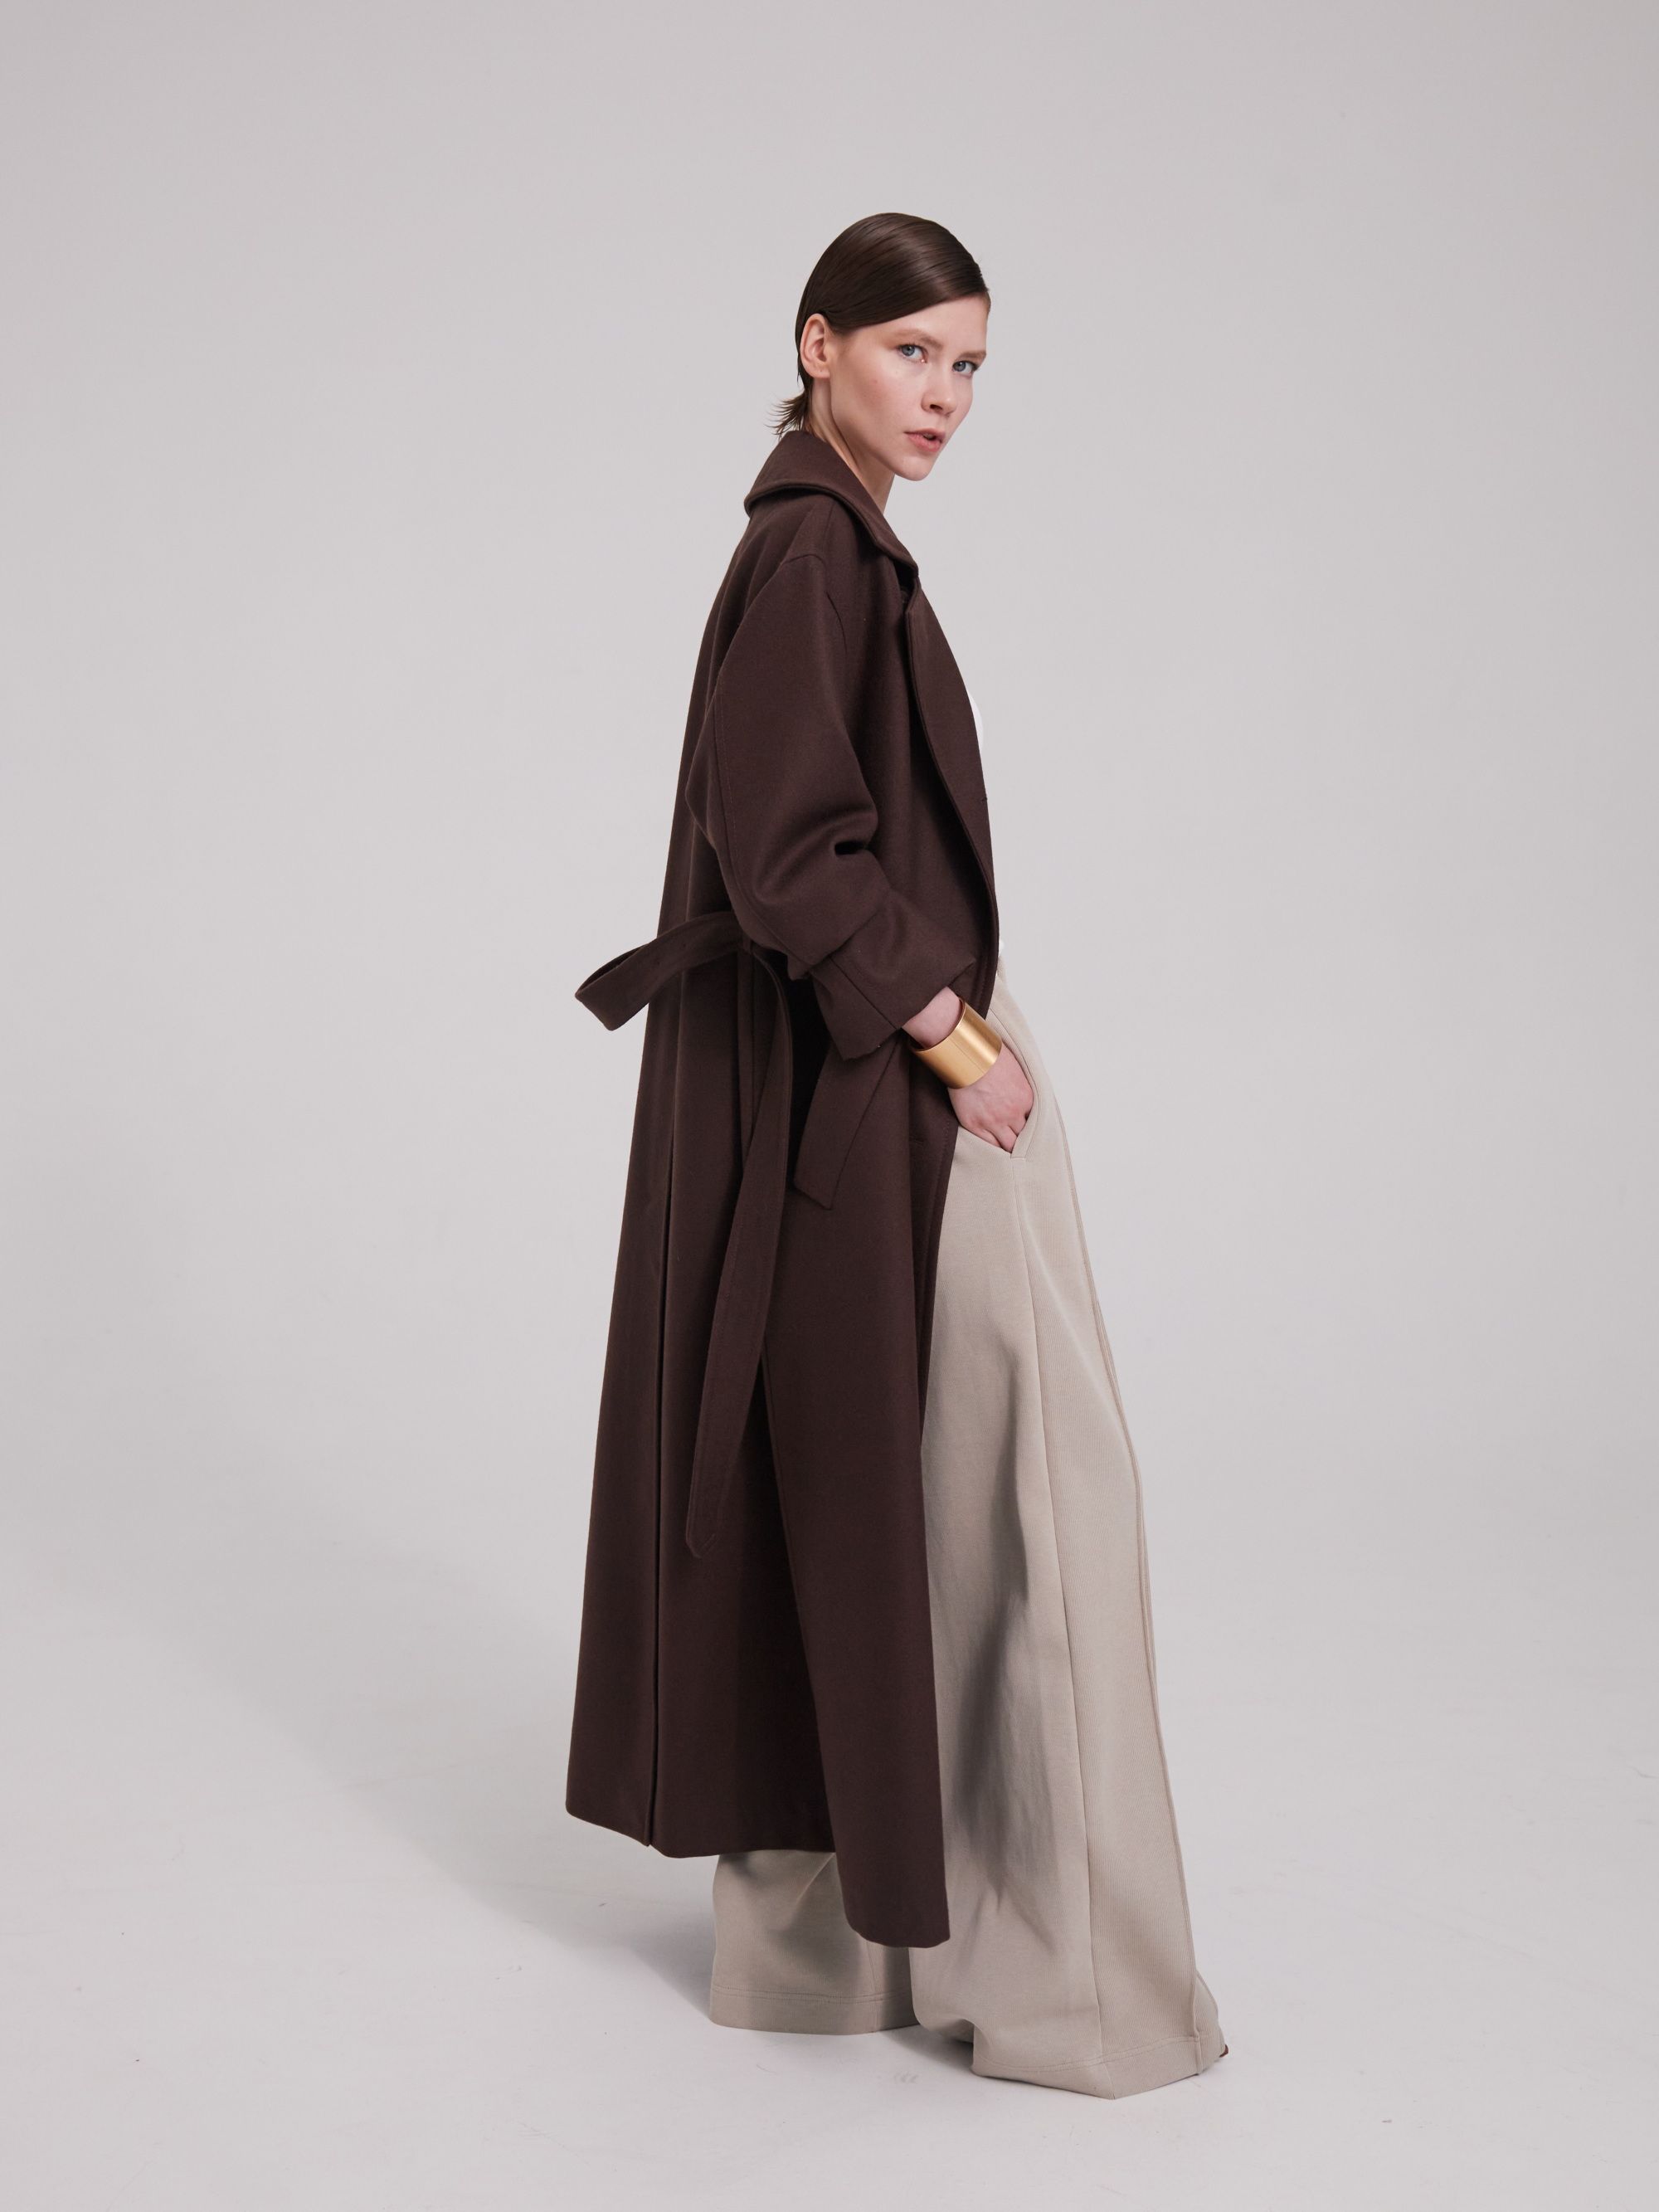 Coat, pattern №999 buy on-line